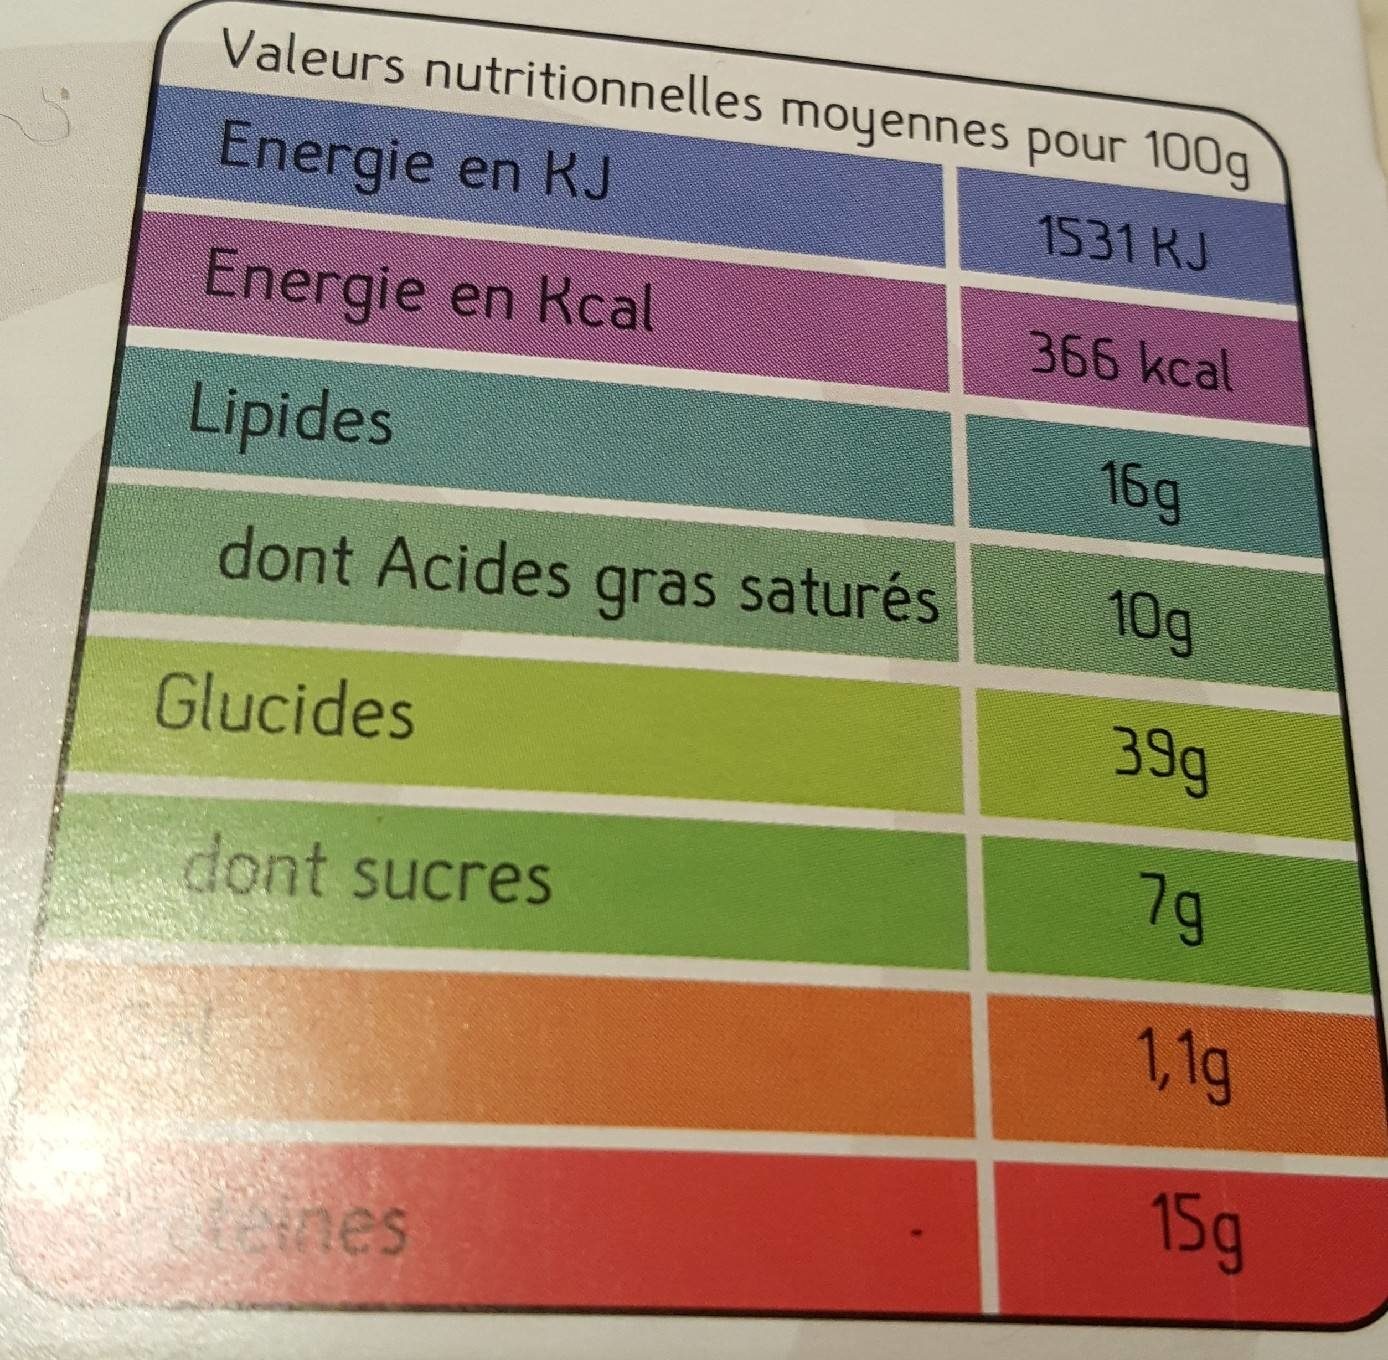 2 croque monsieur - Tableau nutritionnel